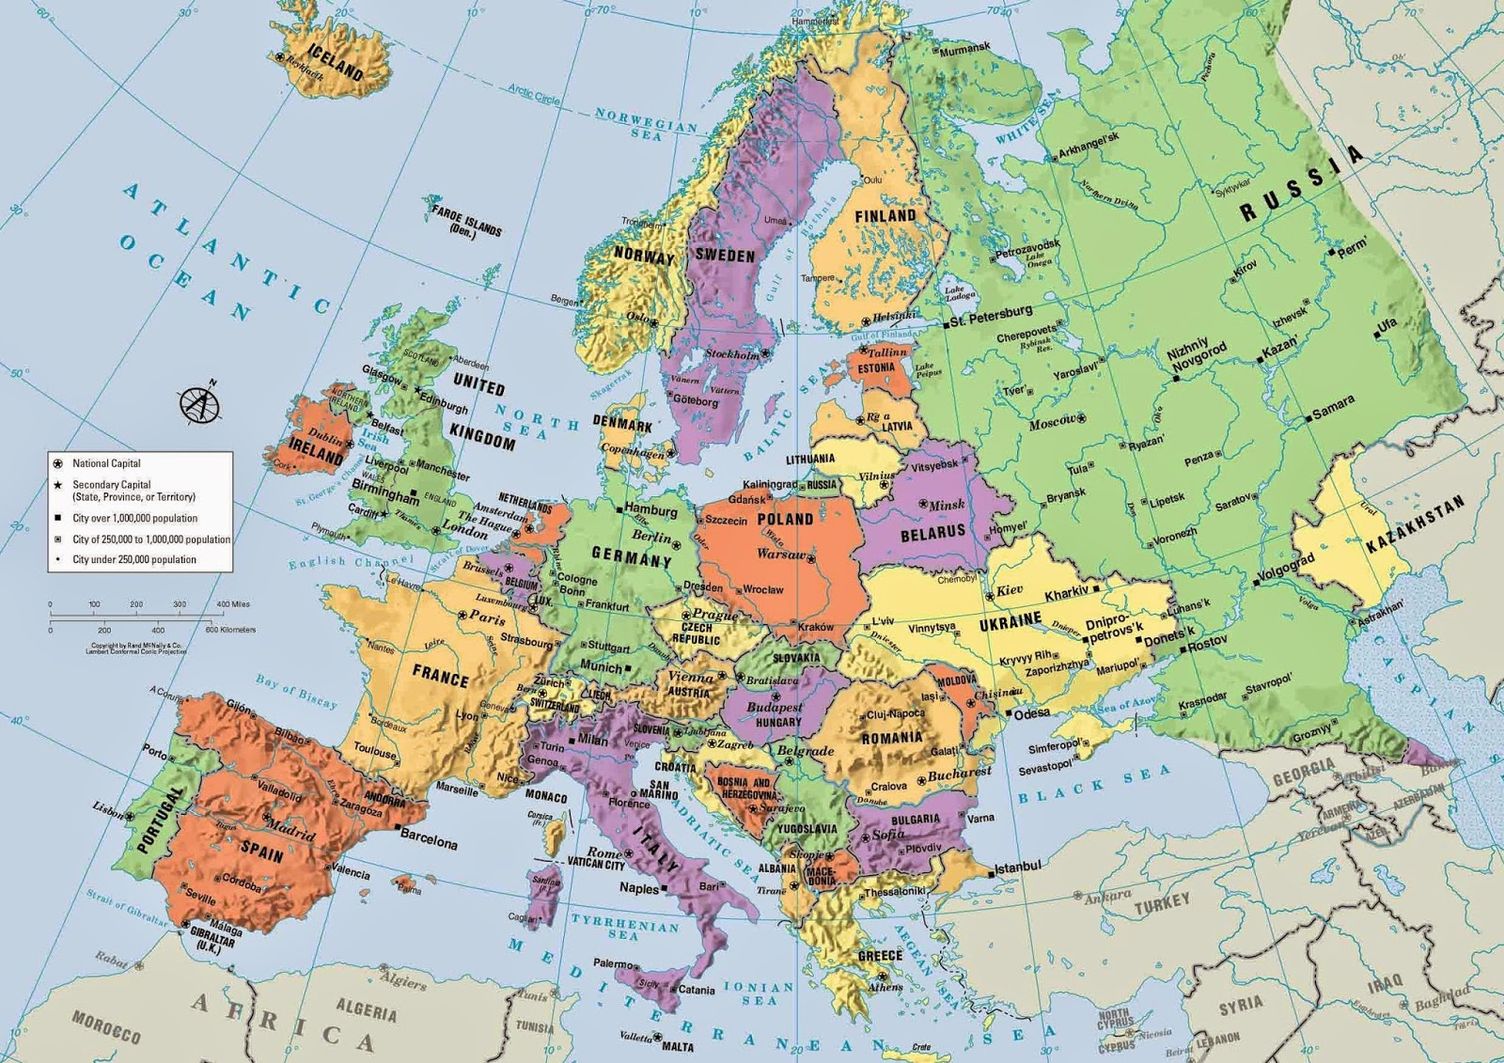 Карта европы и турции со странами крупно на русском